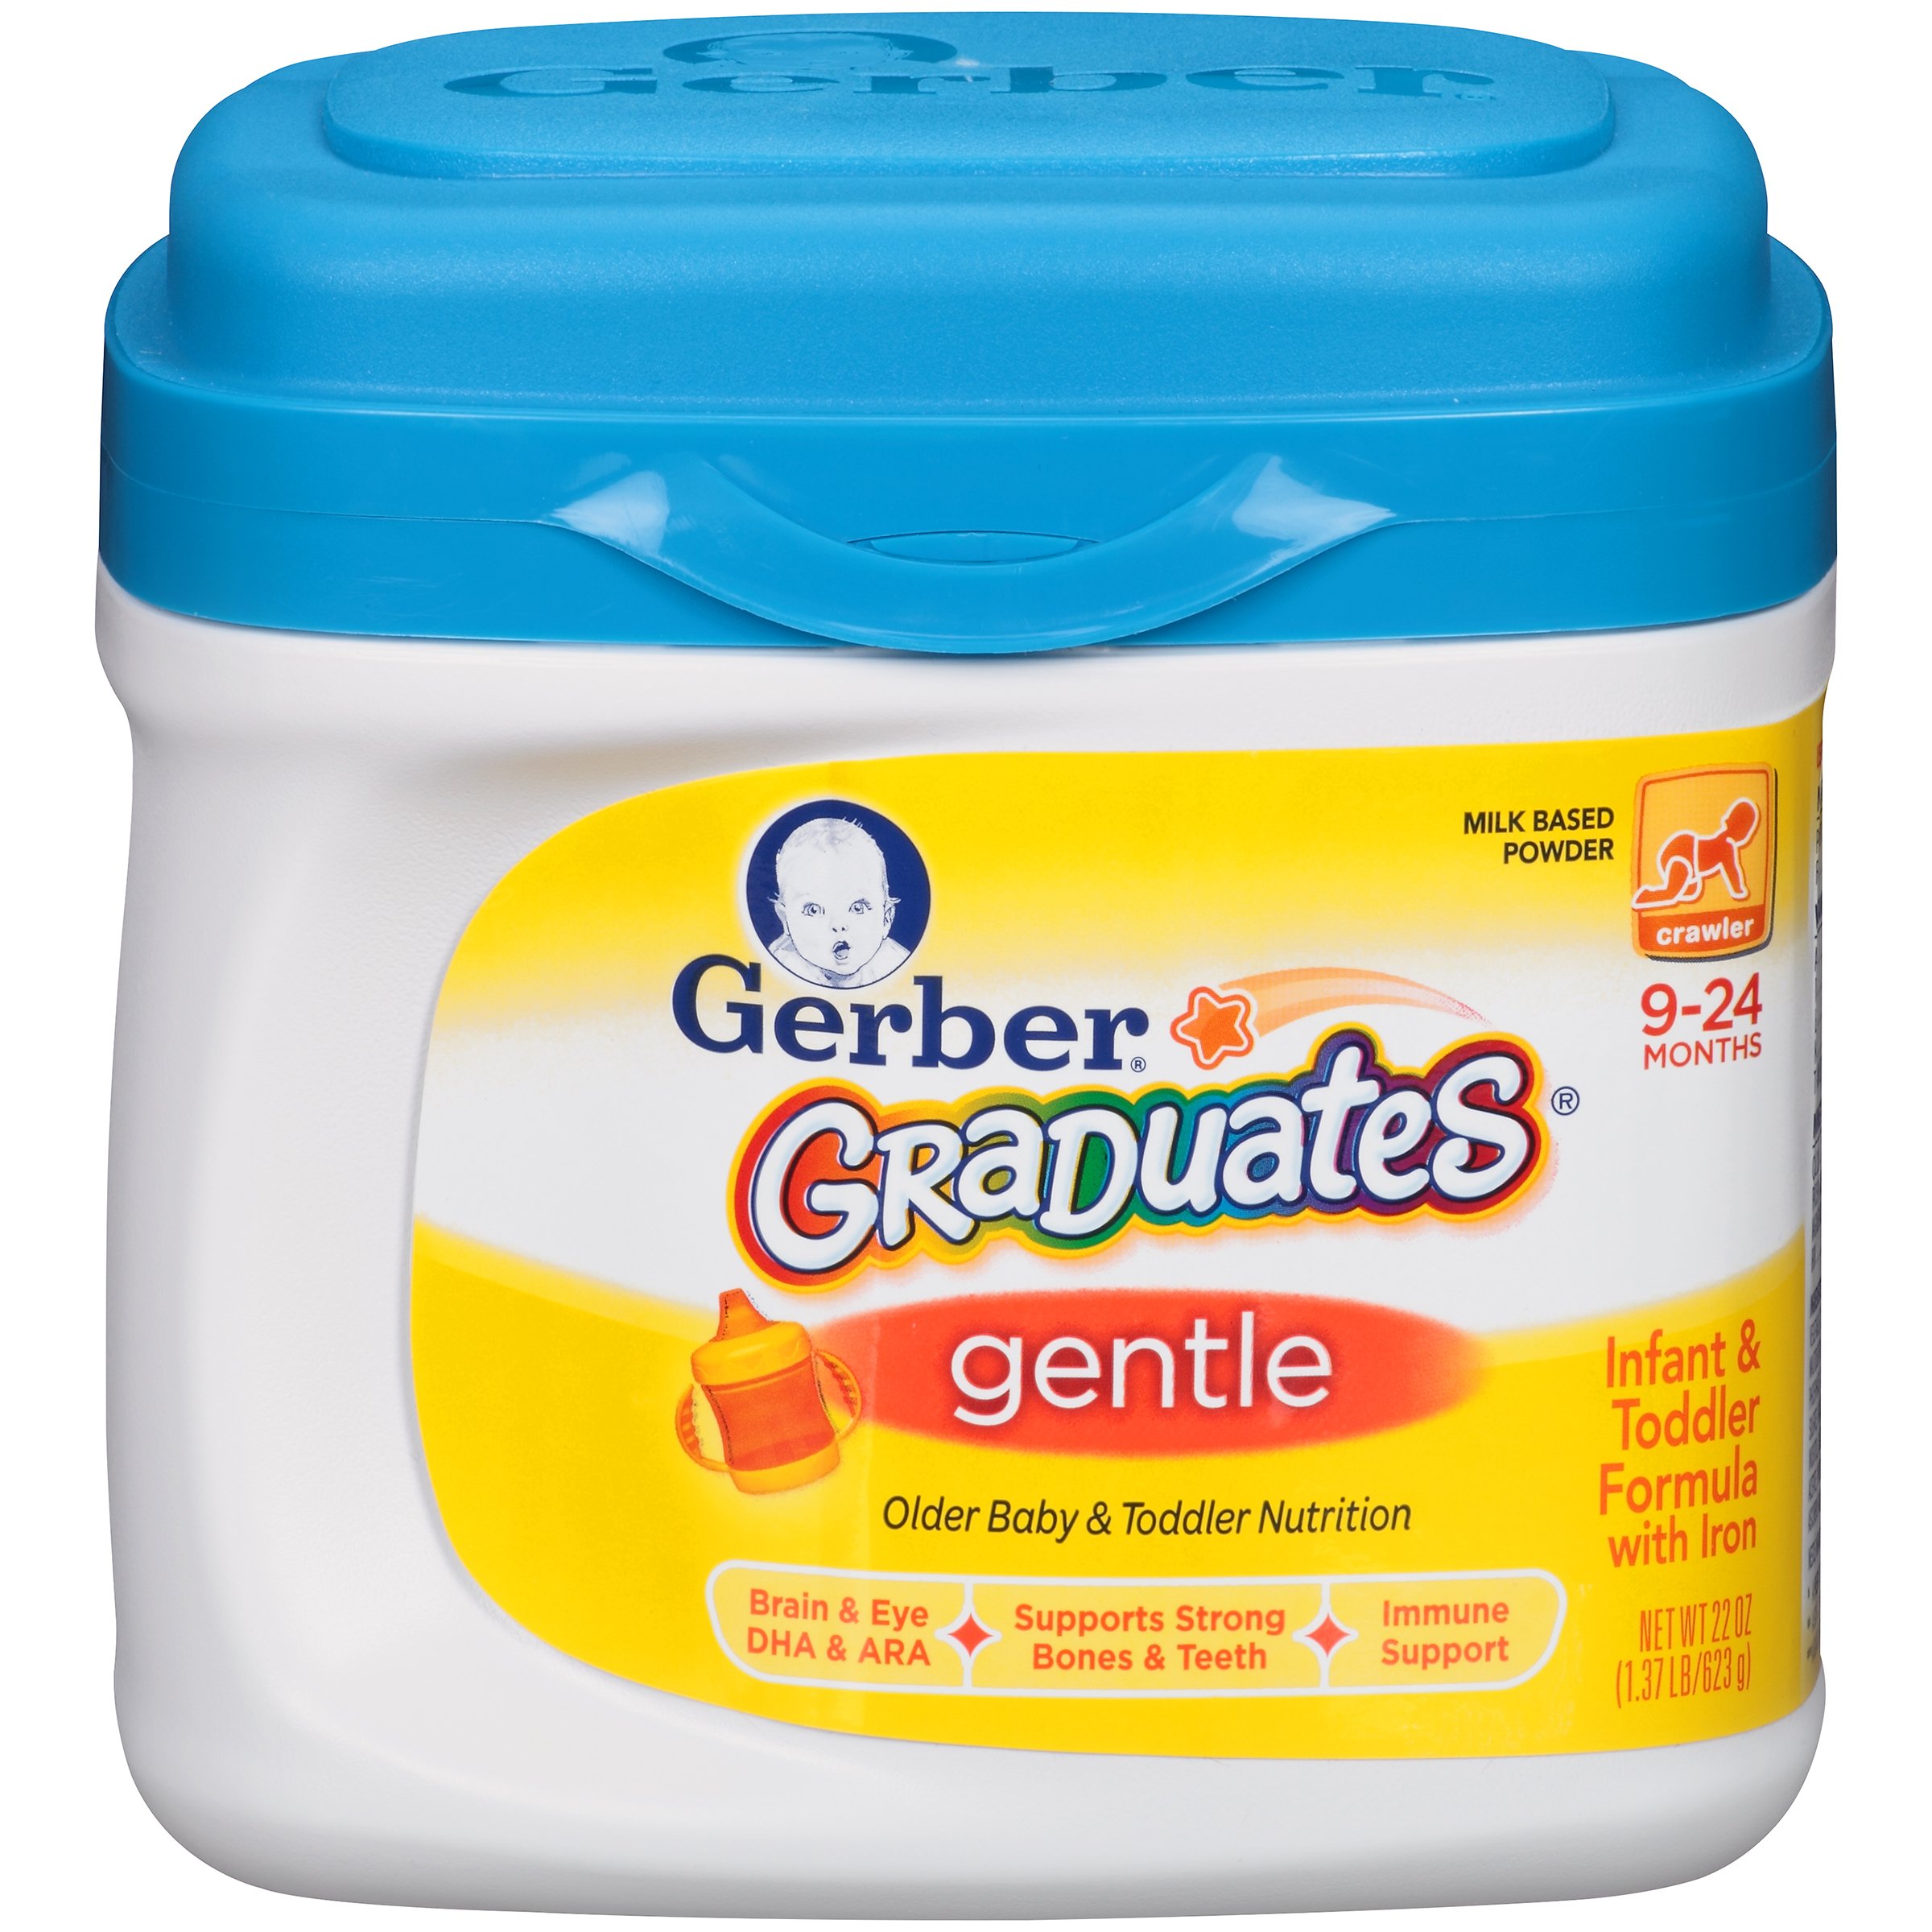 Gerber Graduates Gentle Older Baby & Toddler Nutrition - Shop Formula